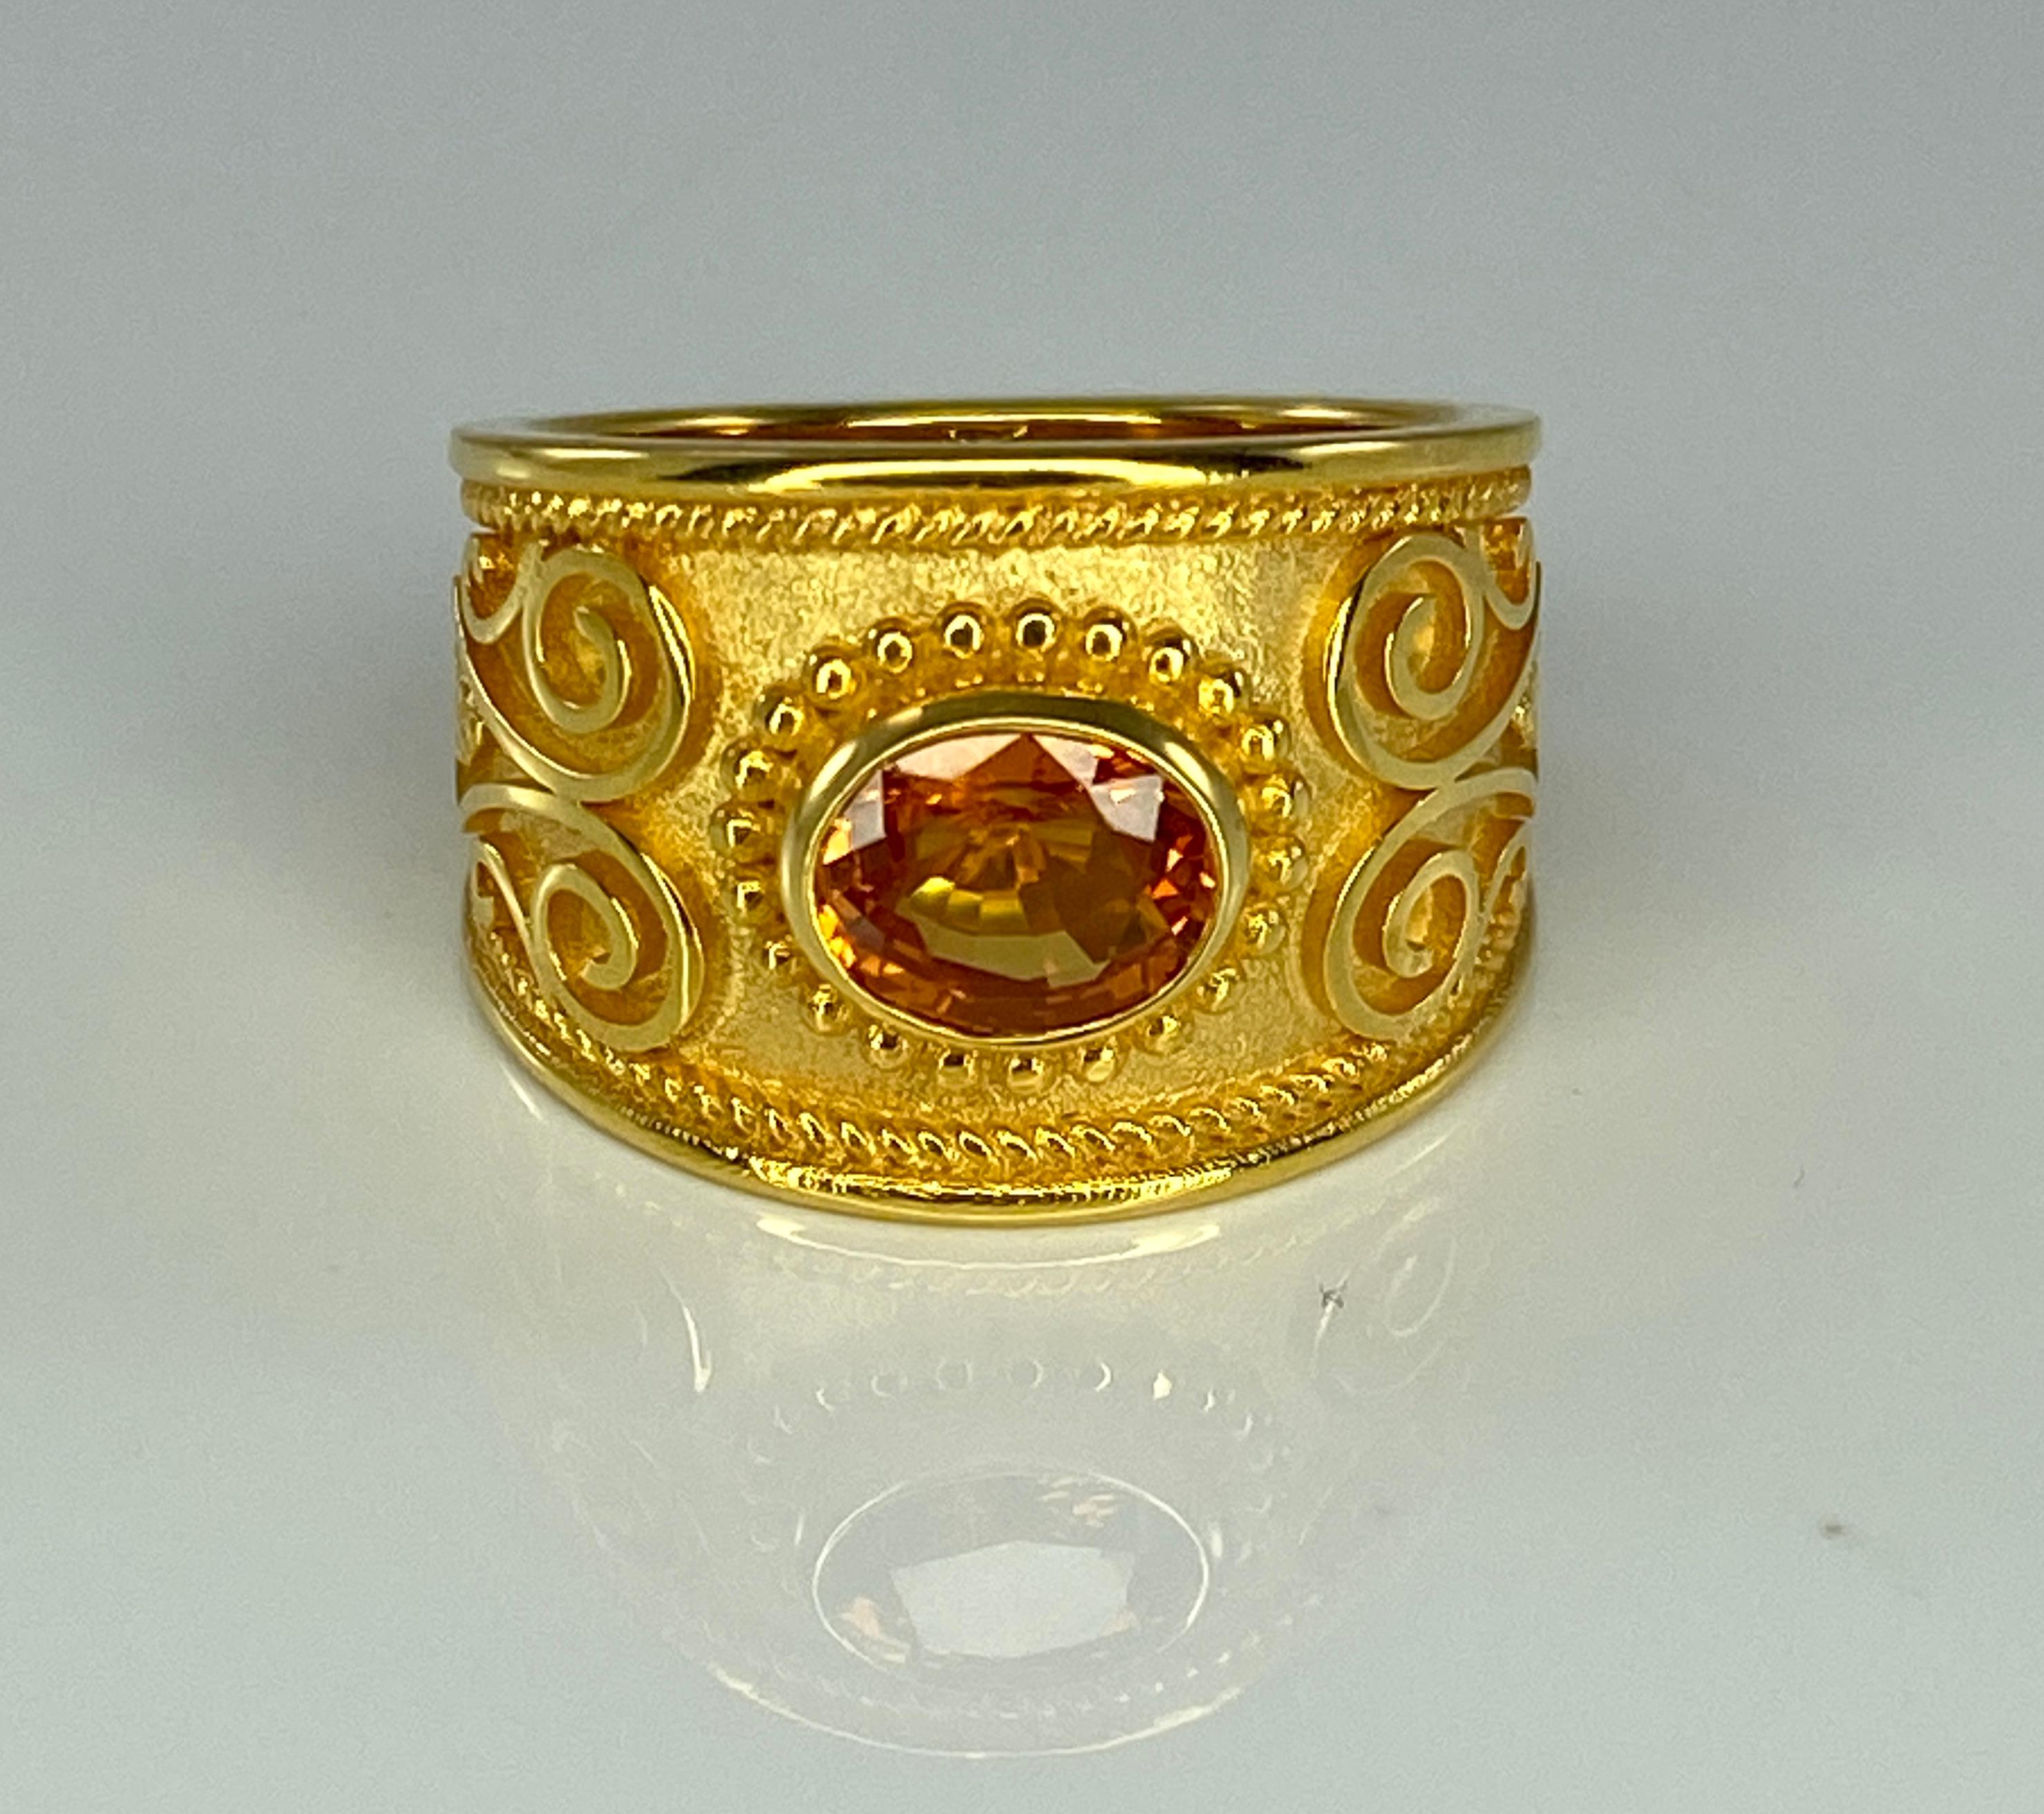 Voici la bague en or jaune massif 18 carats de S.Georgios, entièrement réalisée à la main dans le style byzantin, avec un fond de velours unique orné d'un saphir orange naturel de 1,52 carat de taille ovale. Tous les décors granulés de cette bague